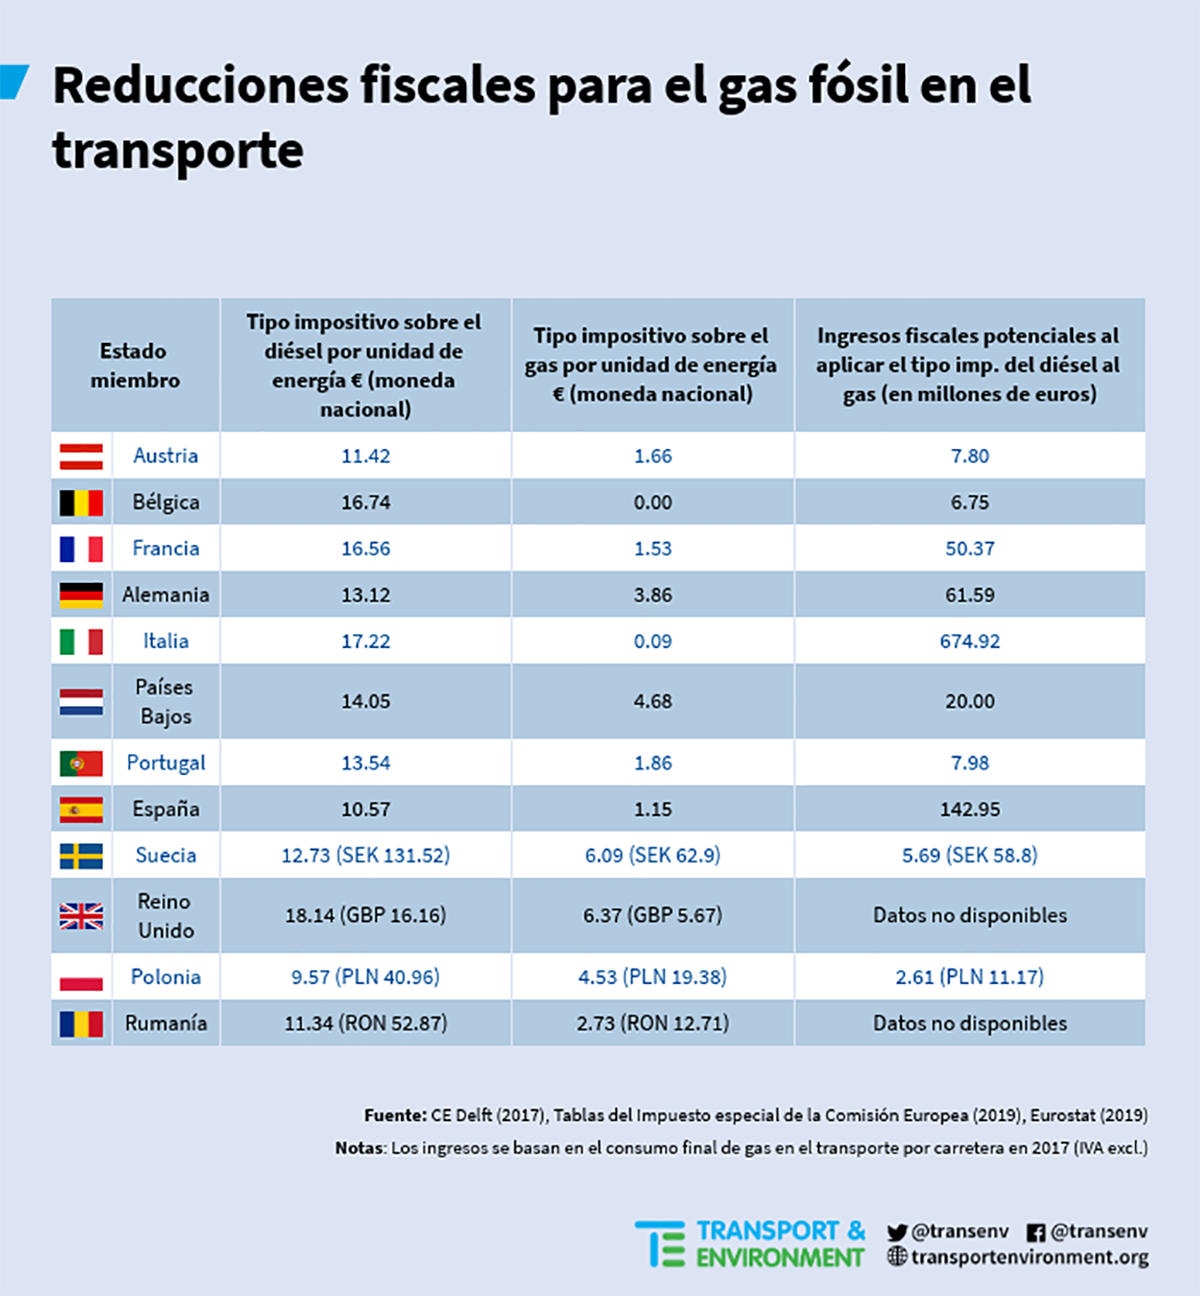 gas_diesel_excise_duties_tax_revenues_es_press-release_v3